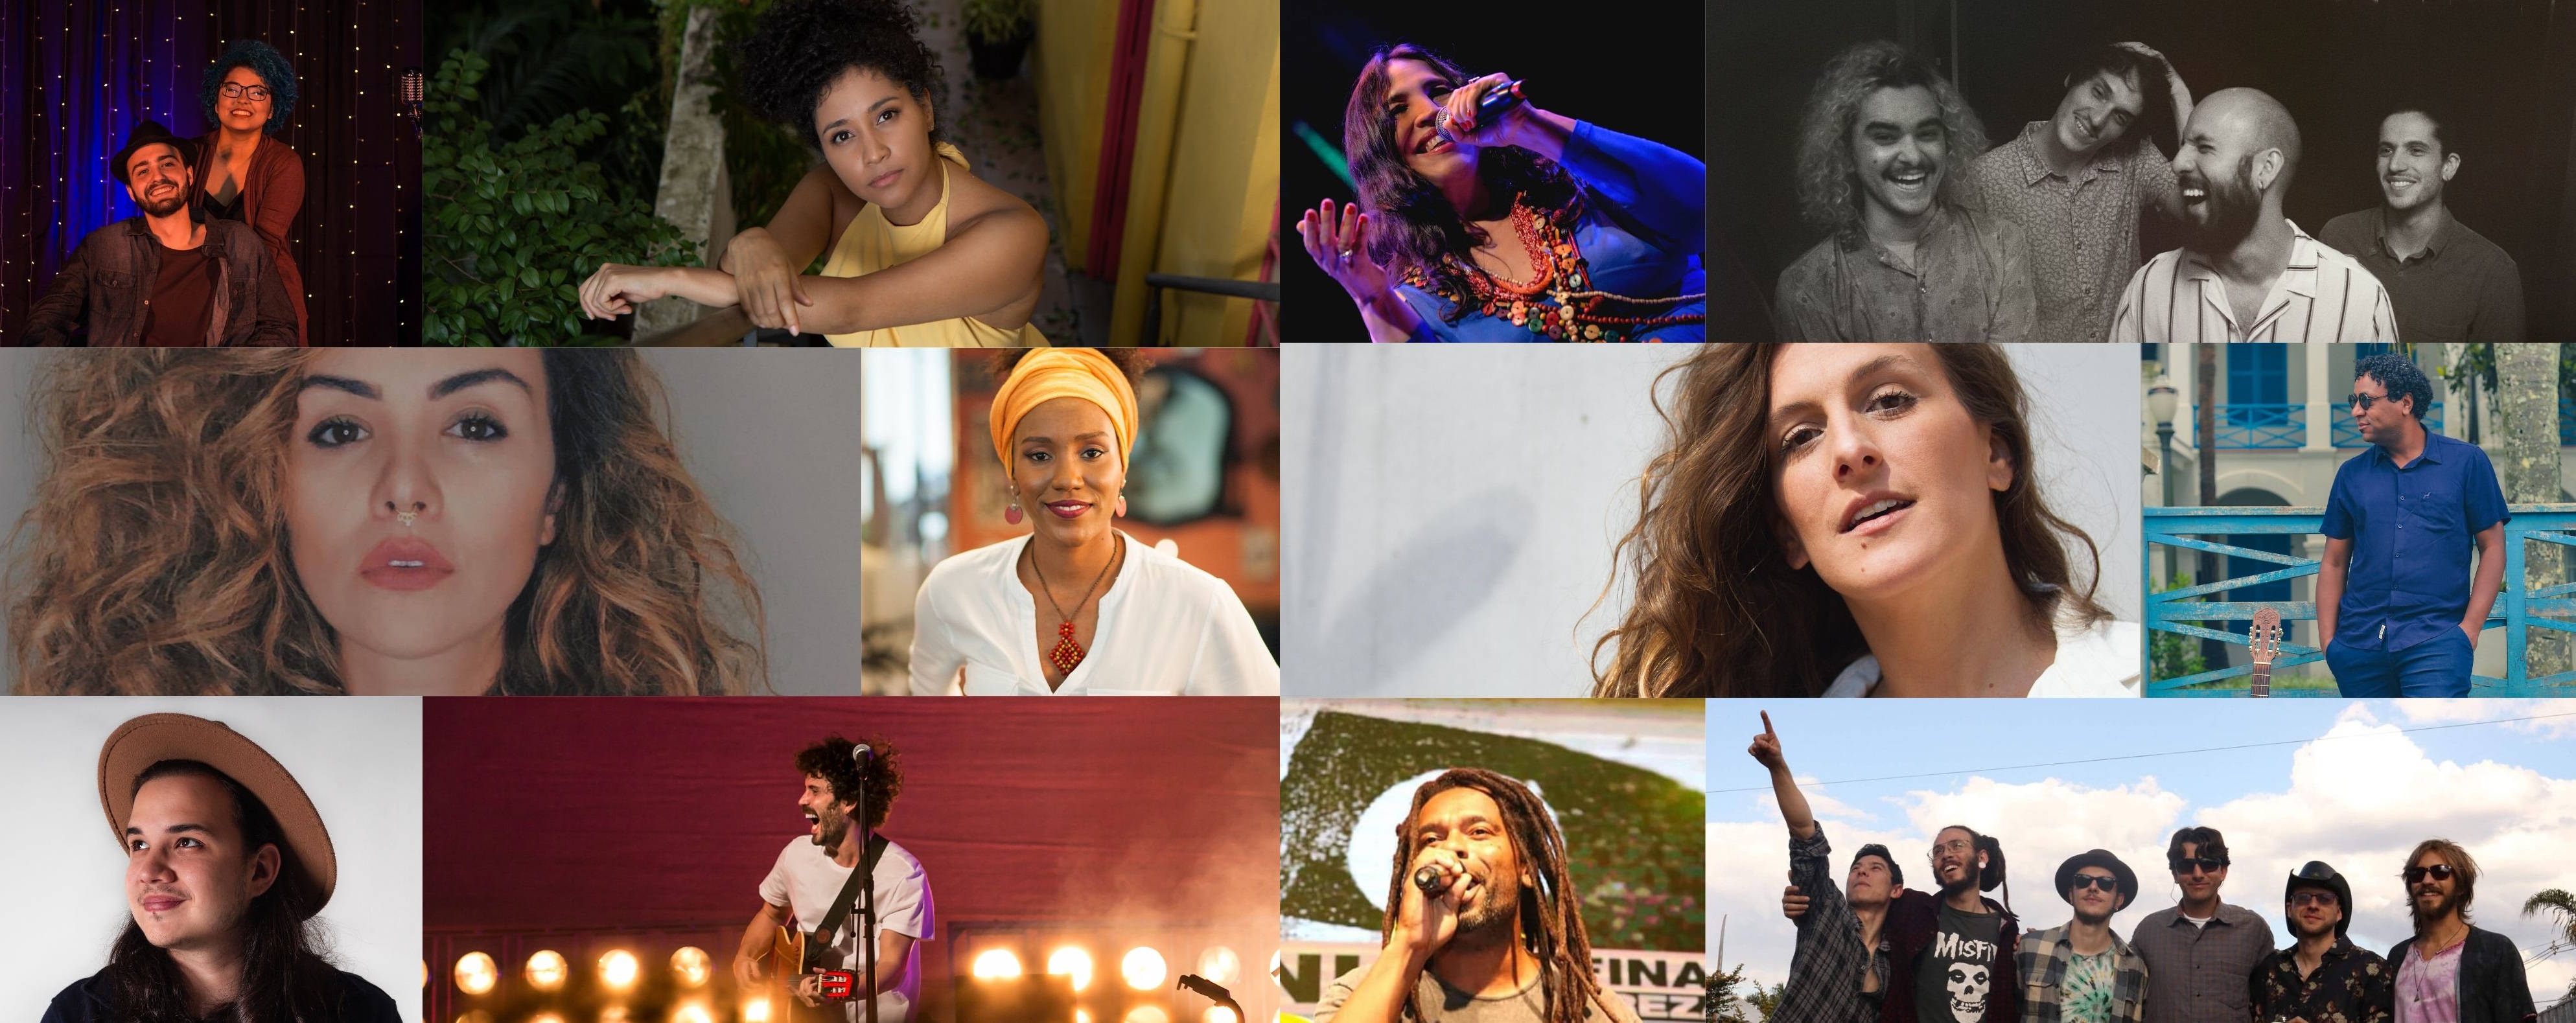 2ª edição do Festival on-line Ficaí ocorre nesta quarta e quinta com 12 artistas de todo o país